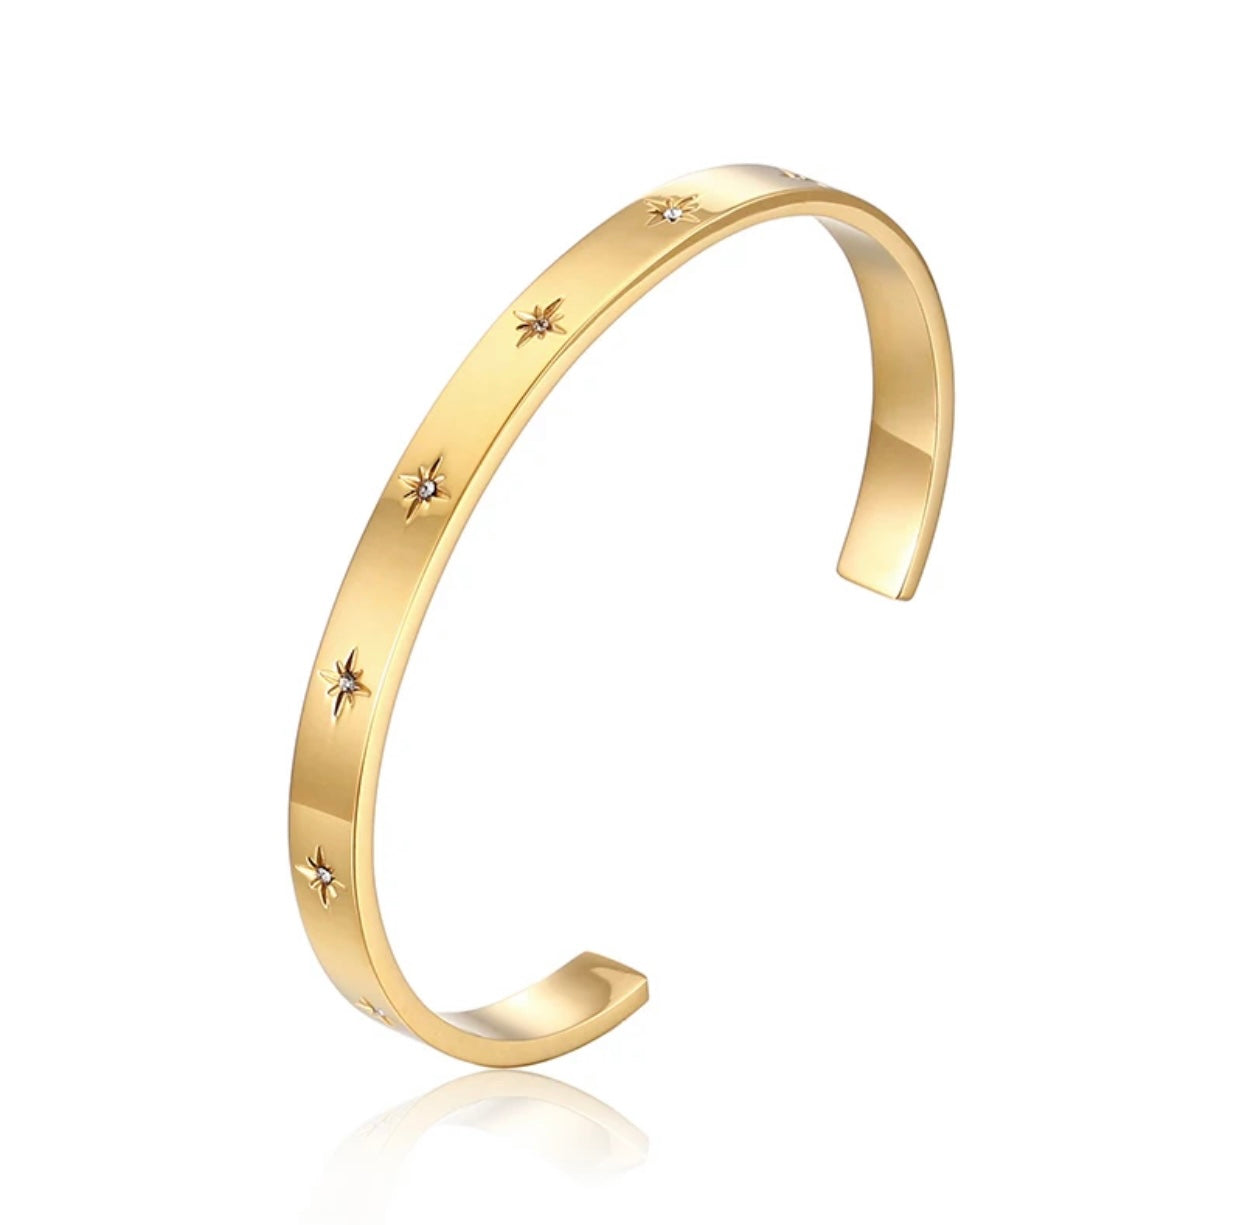 Crystal studded 18k gold bracelet